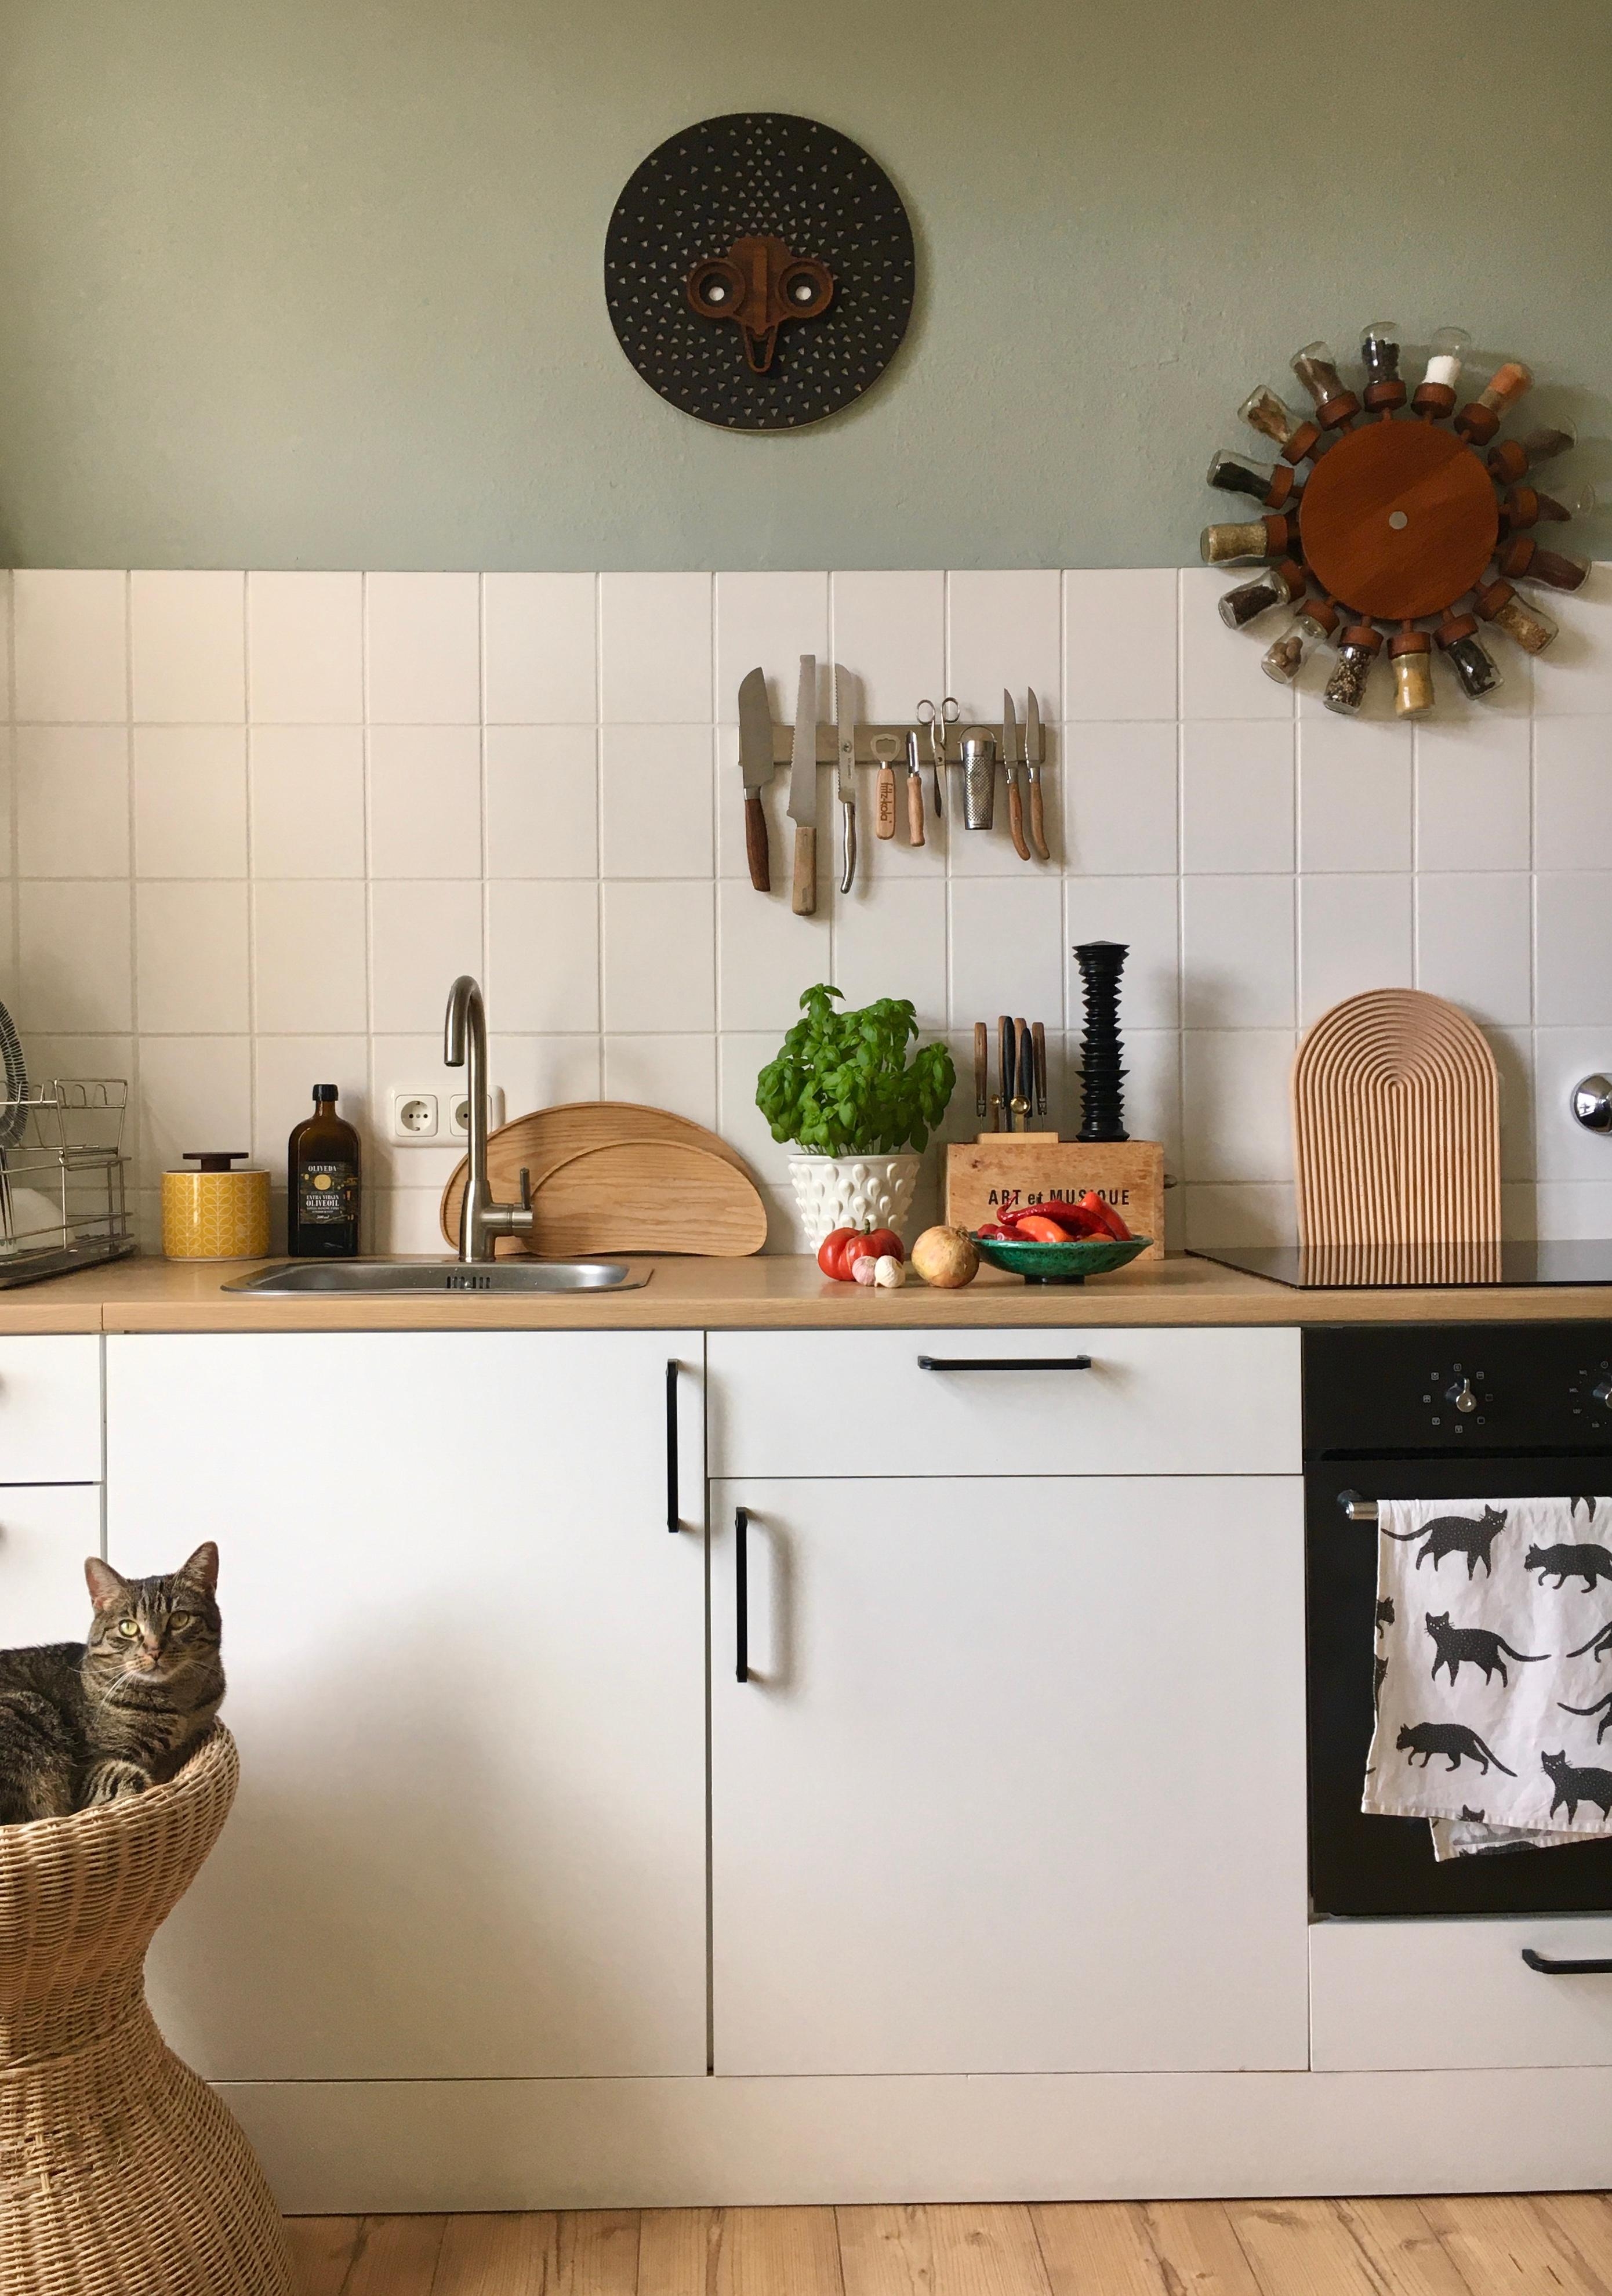 Heute ist Pasta Tag, mit frischer Tomaten- Chilli Soße 🍅🧄🌶🧅🌱🍝
Und Katze.
#küche #altbauwohnung #küchenliebe #katze